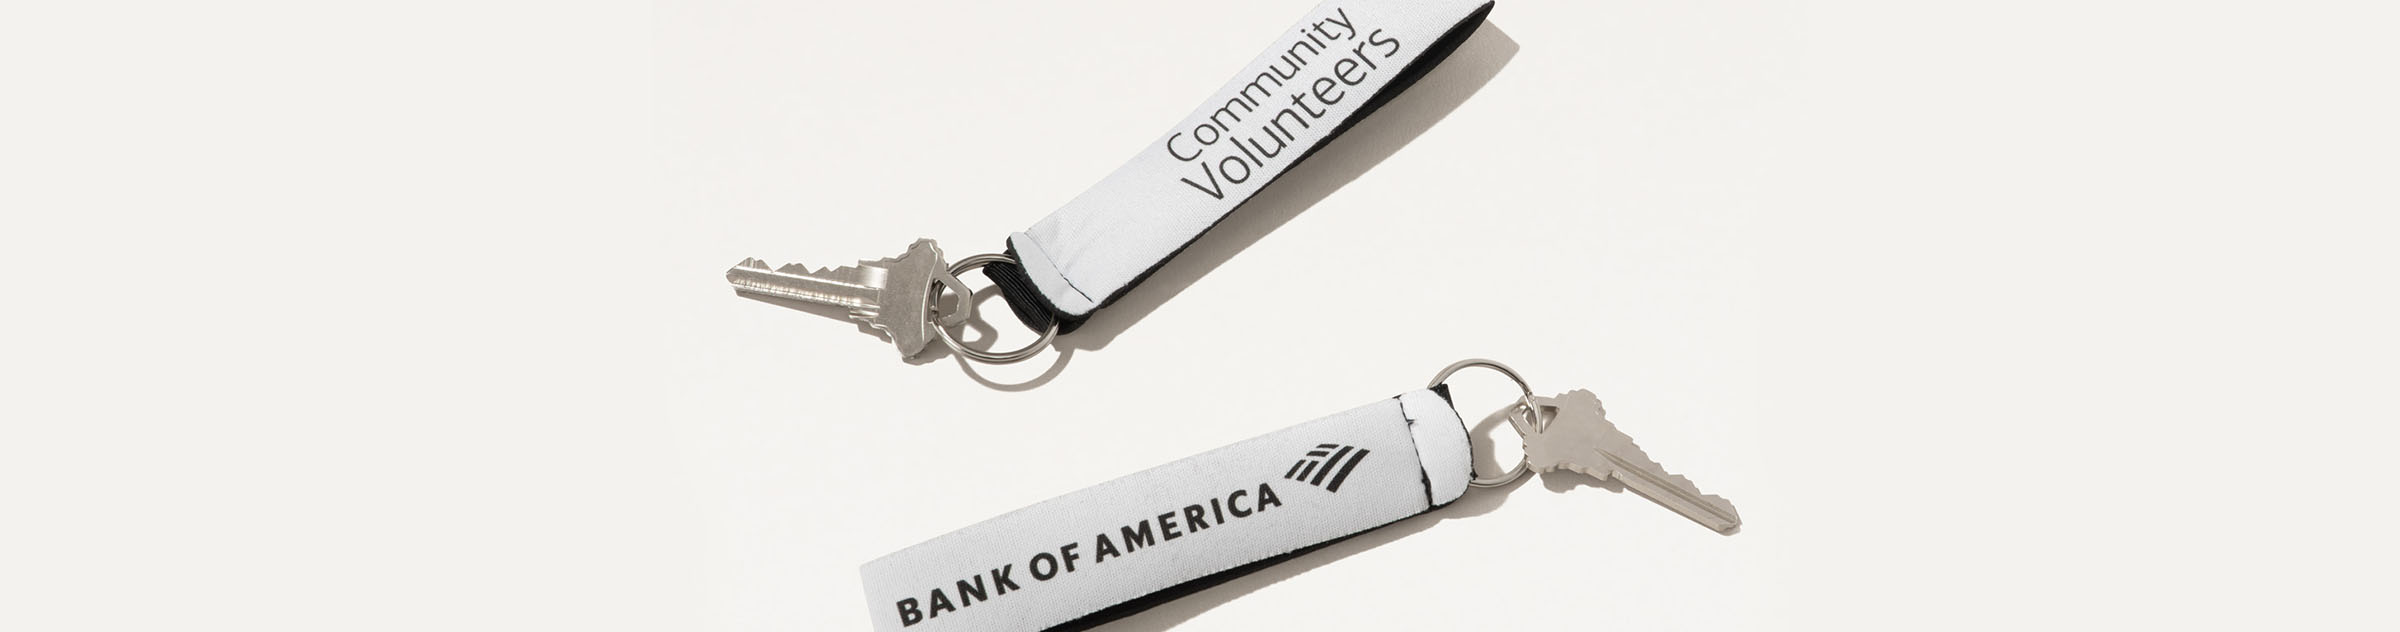 Bank of America Community Volunteers